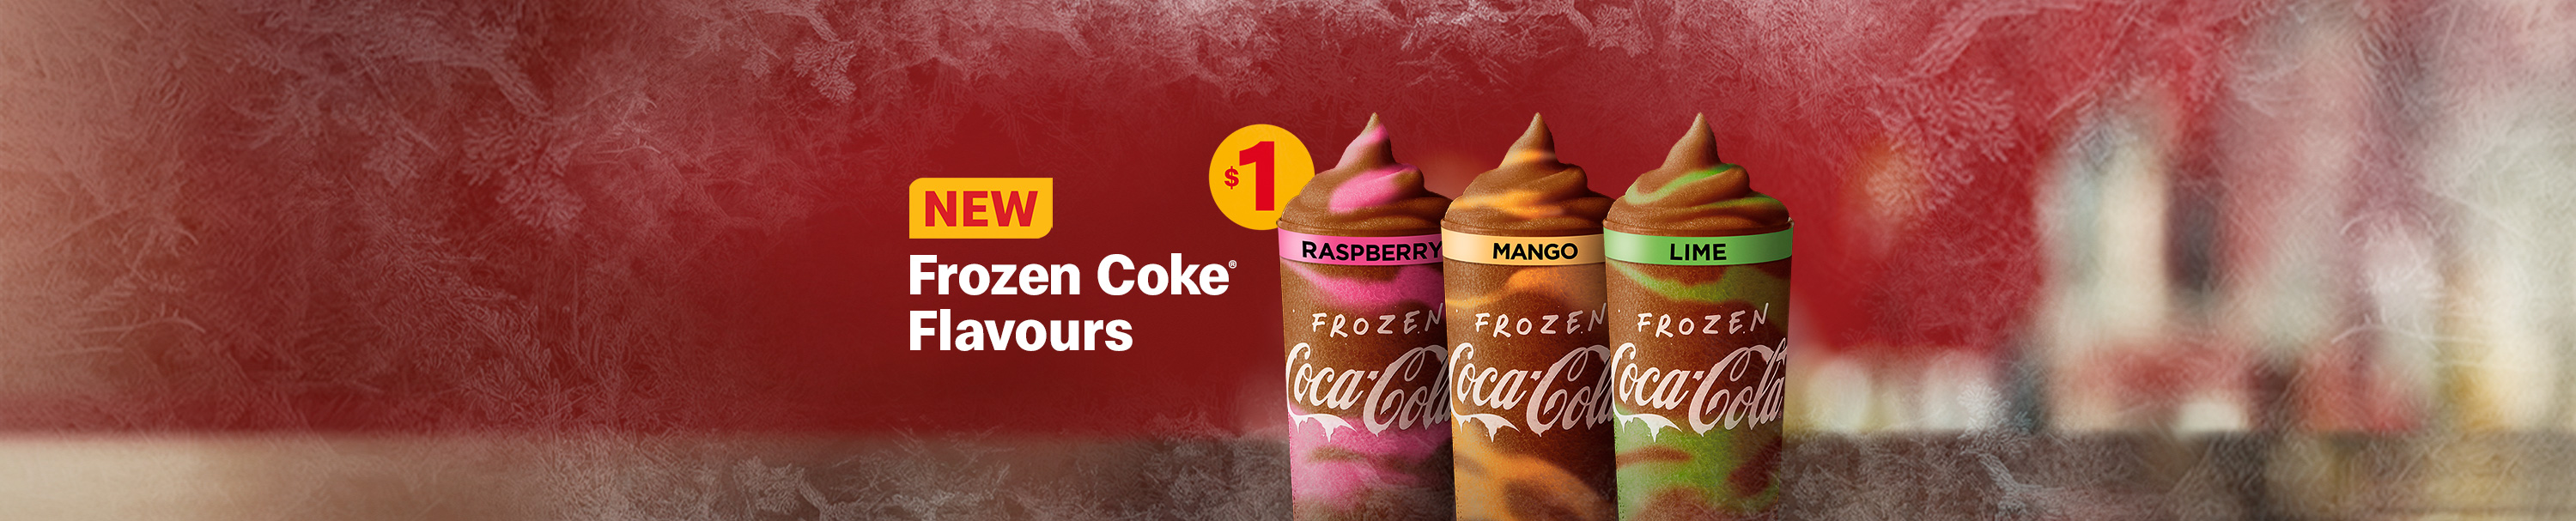 Frozen Coke Flavours